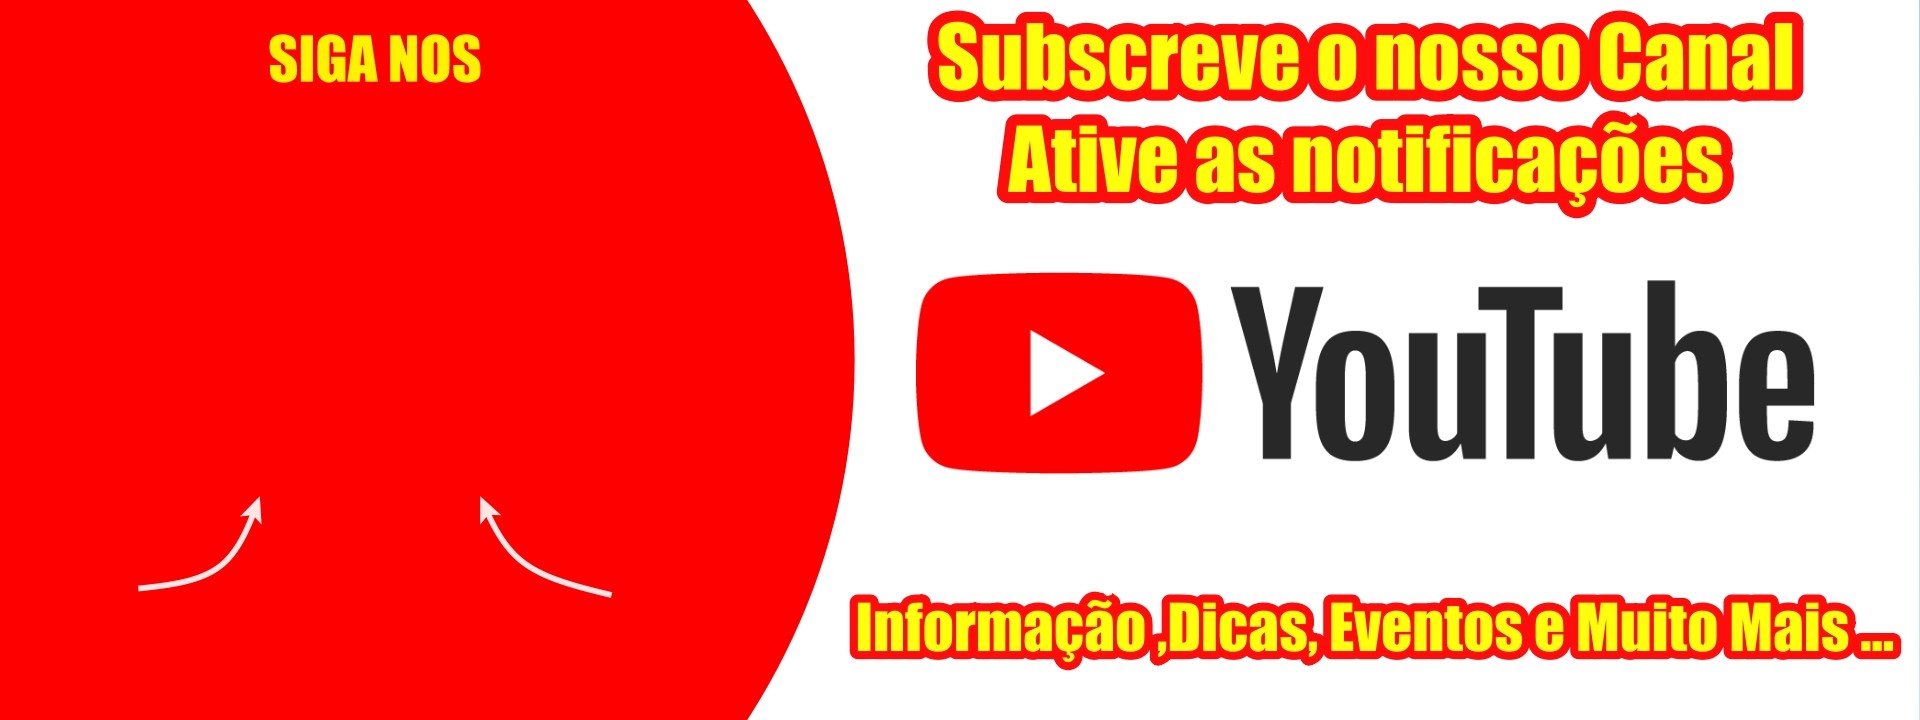 Siga nos no Youtube, lançamentos de produtos, novidades, dicas, eventos e muito mais.